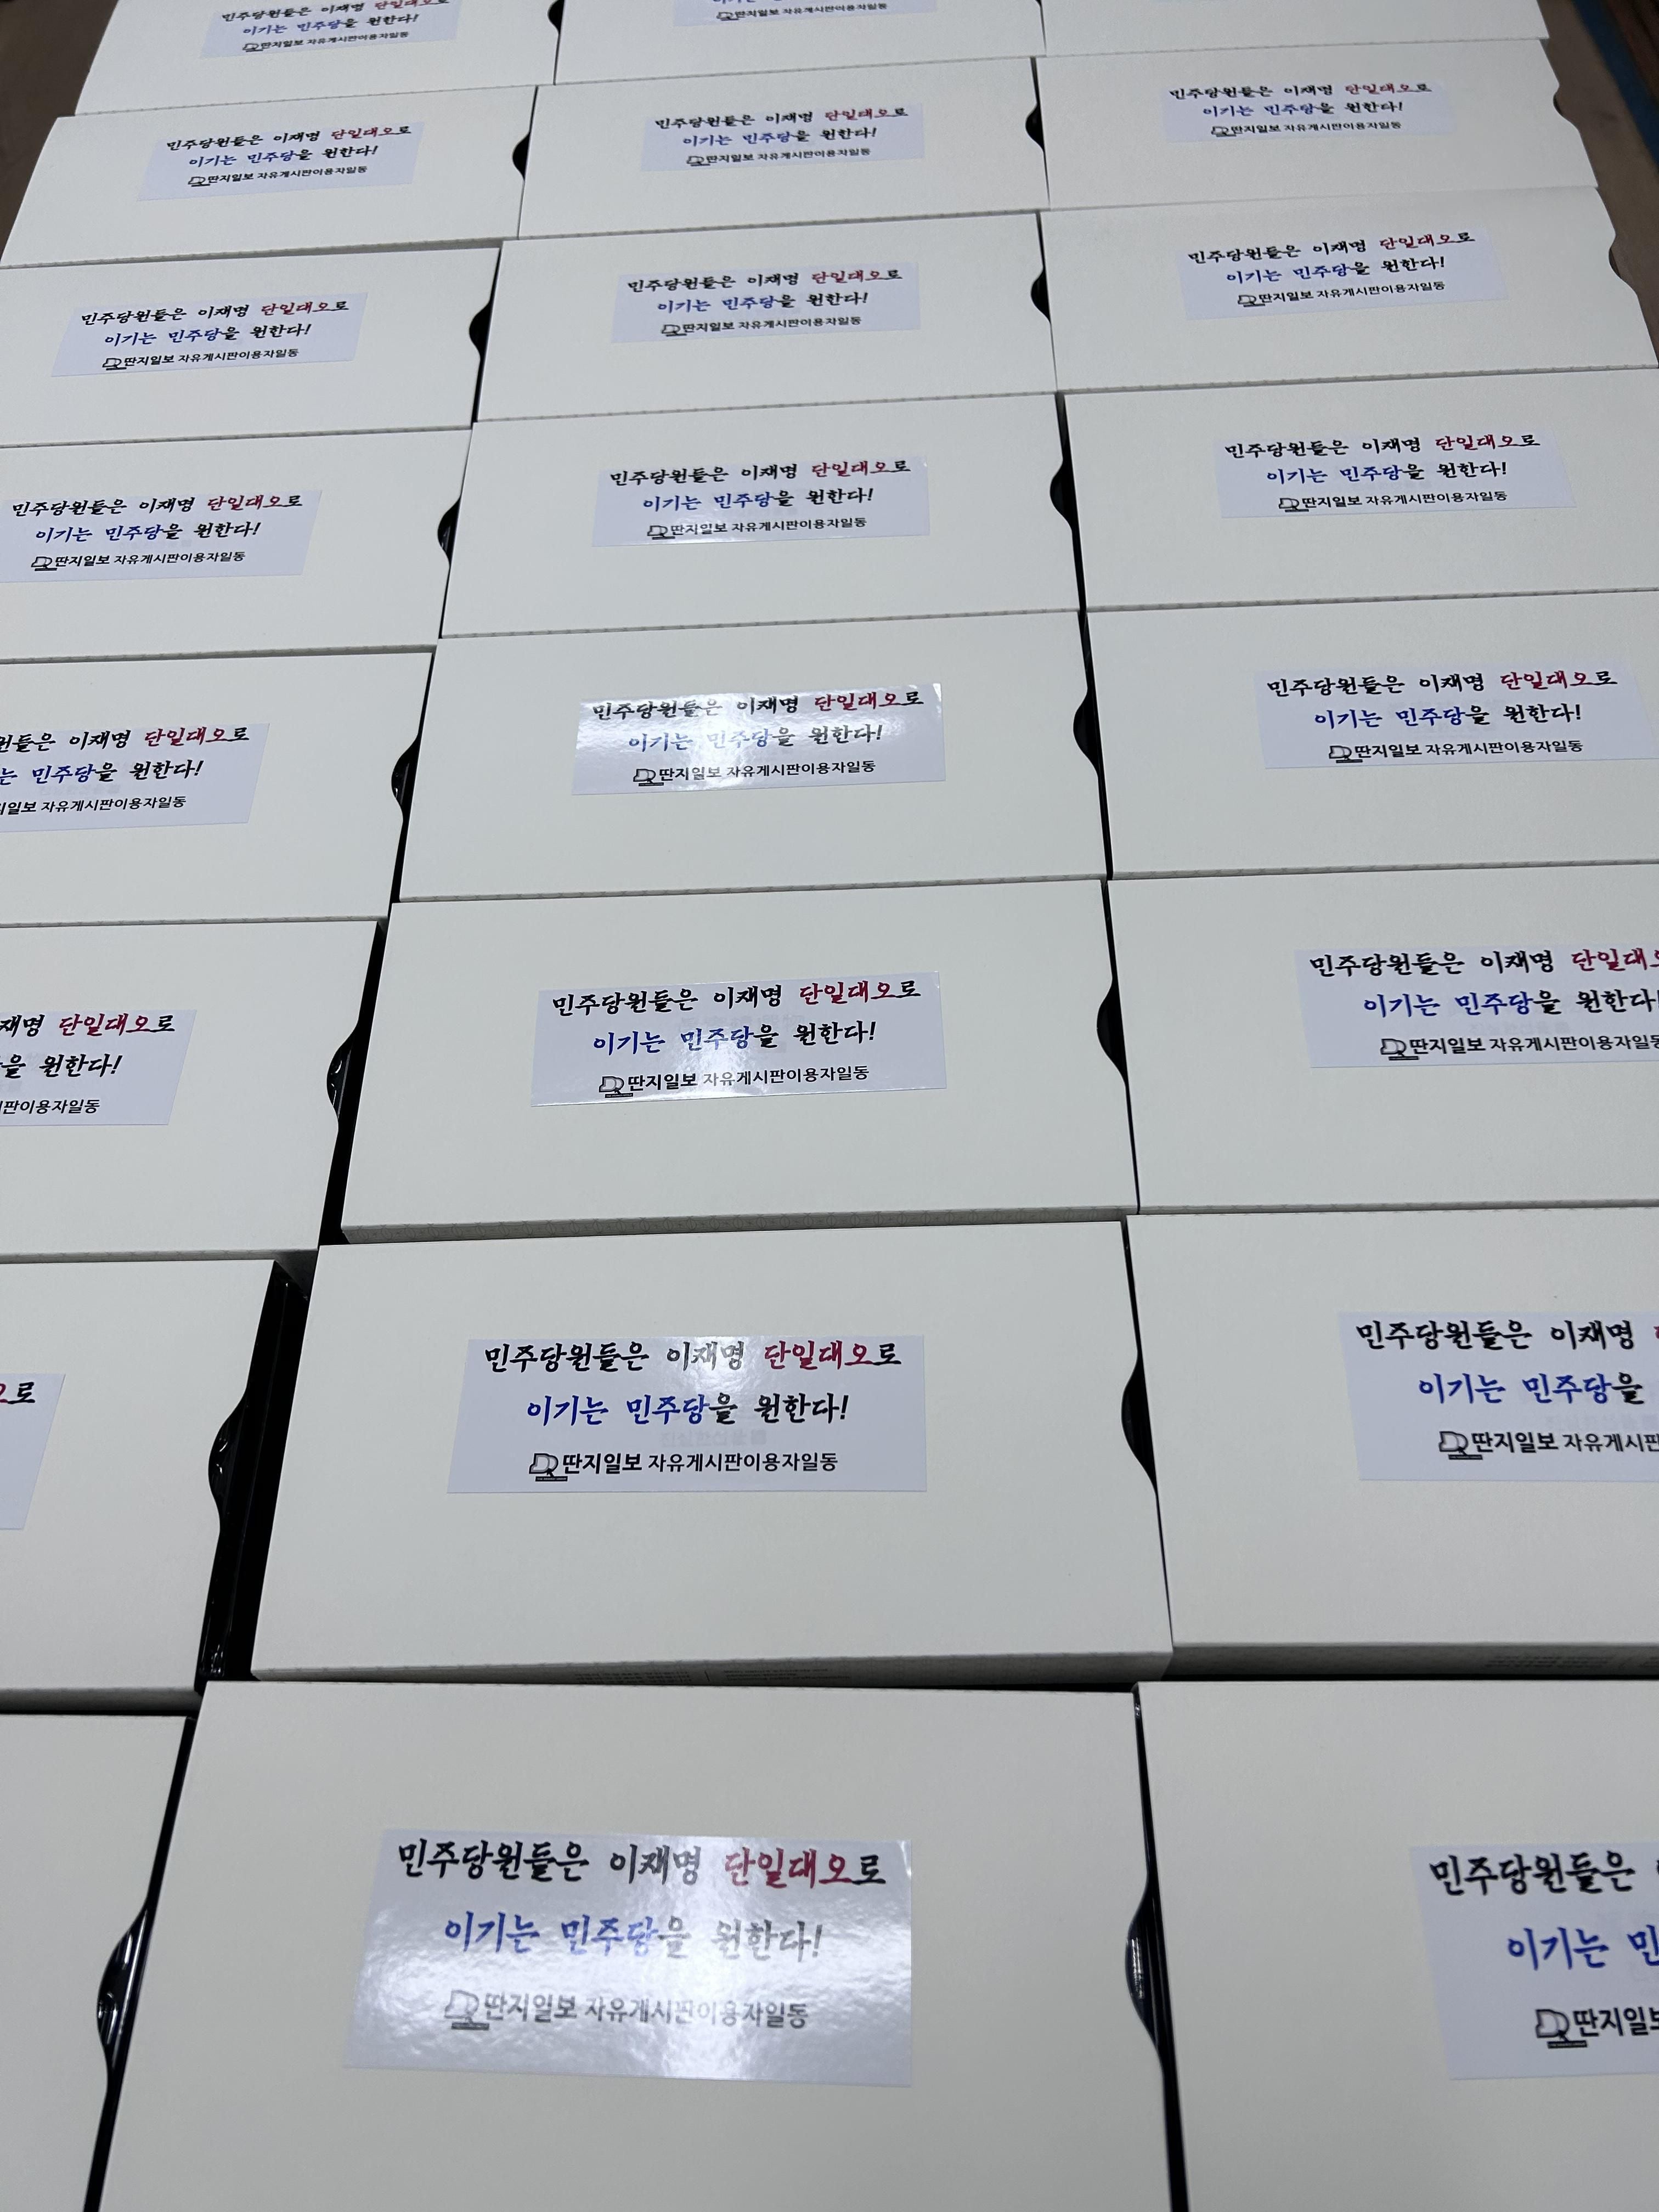 8일 민주당 169명 의원실에 전달된 지지자들의 떡 상자. /온라인 커뮤니티 딴지일보